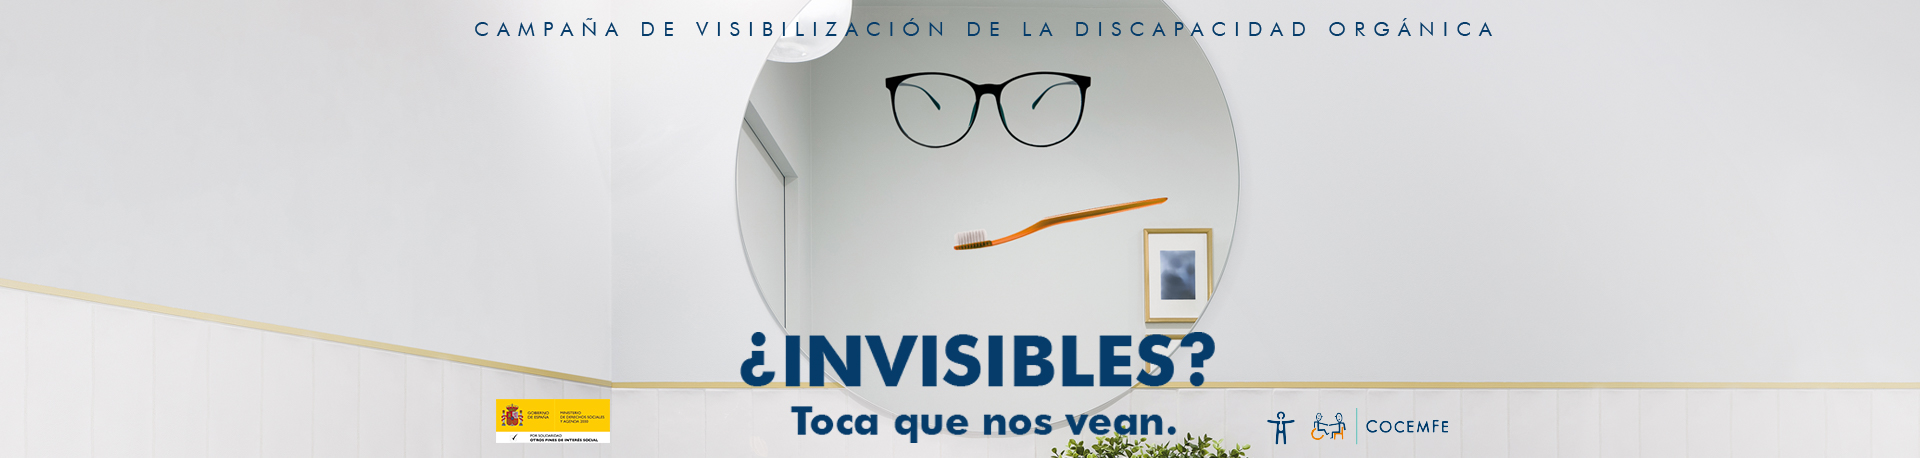 Campaña Invisibles. Toca que nos vean